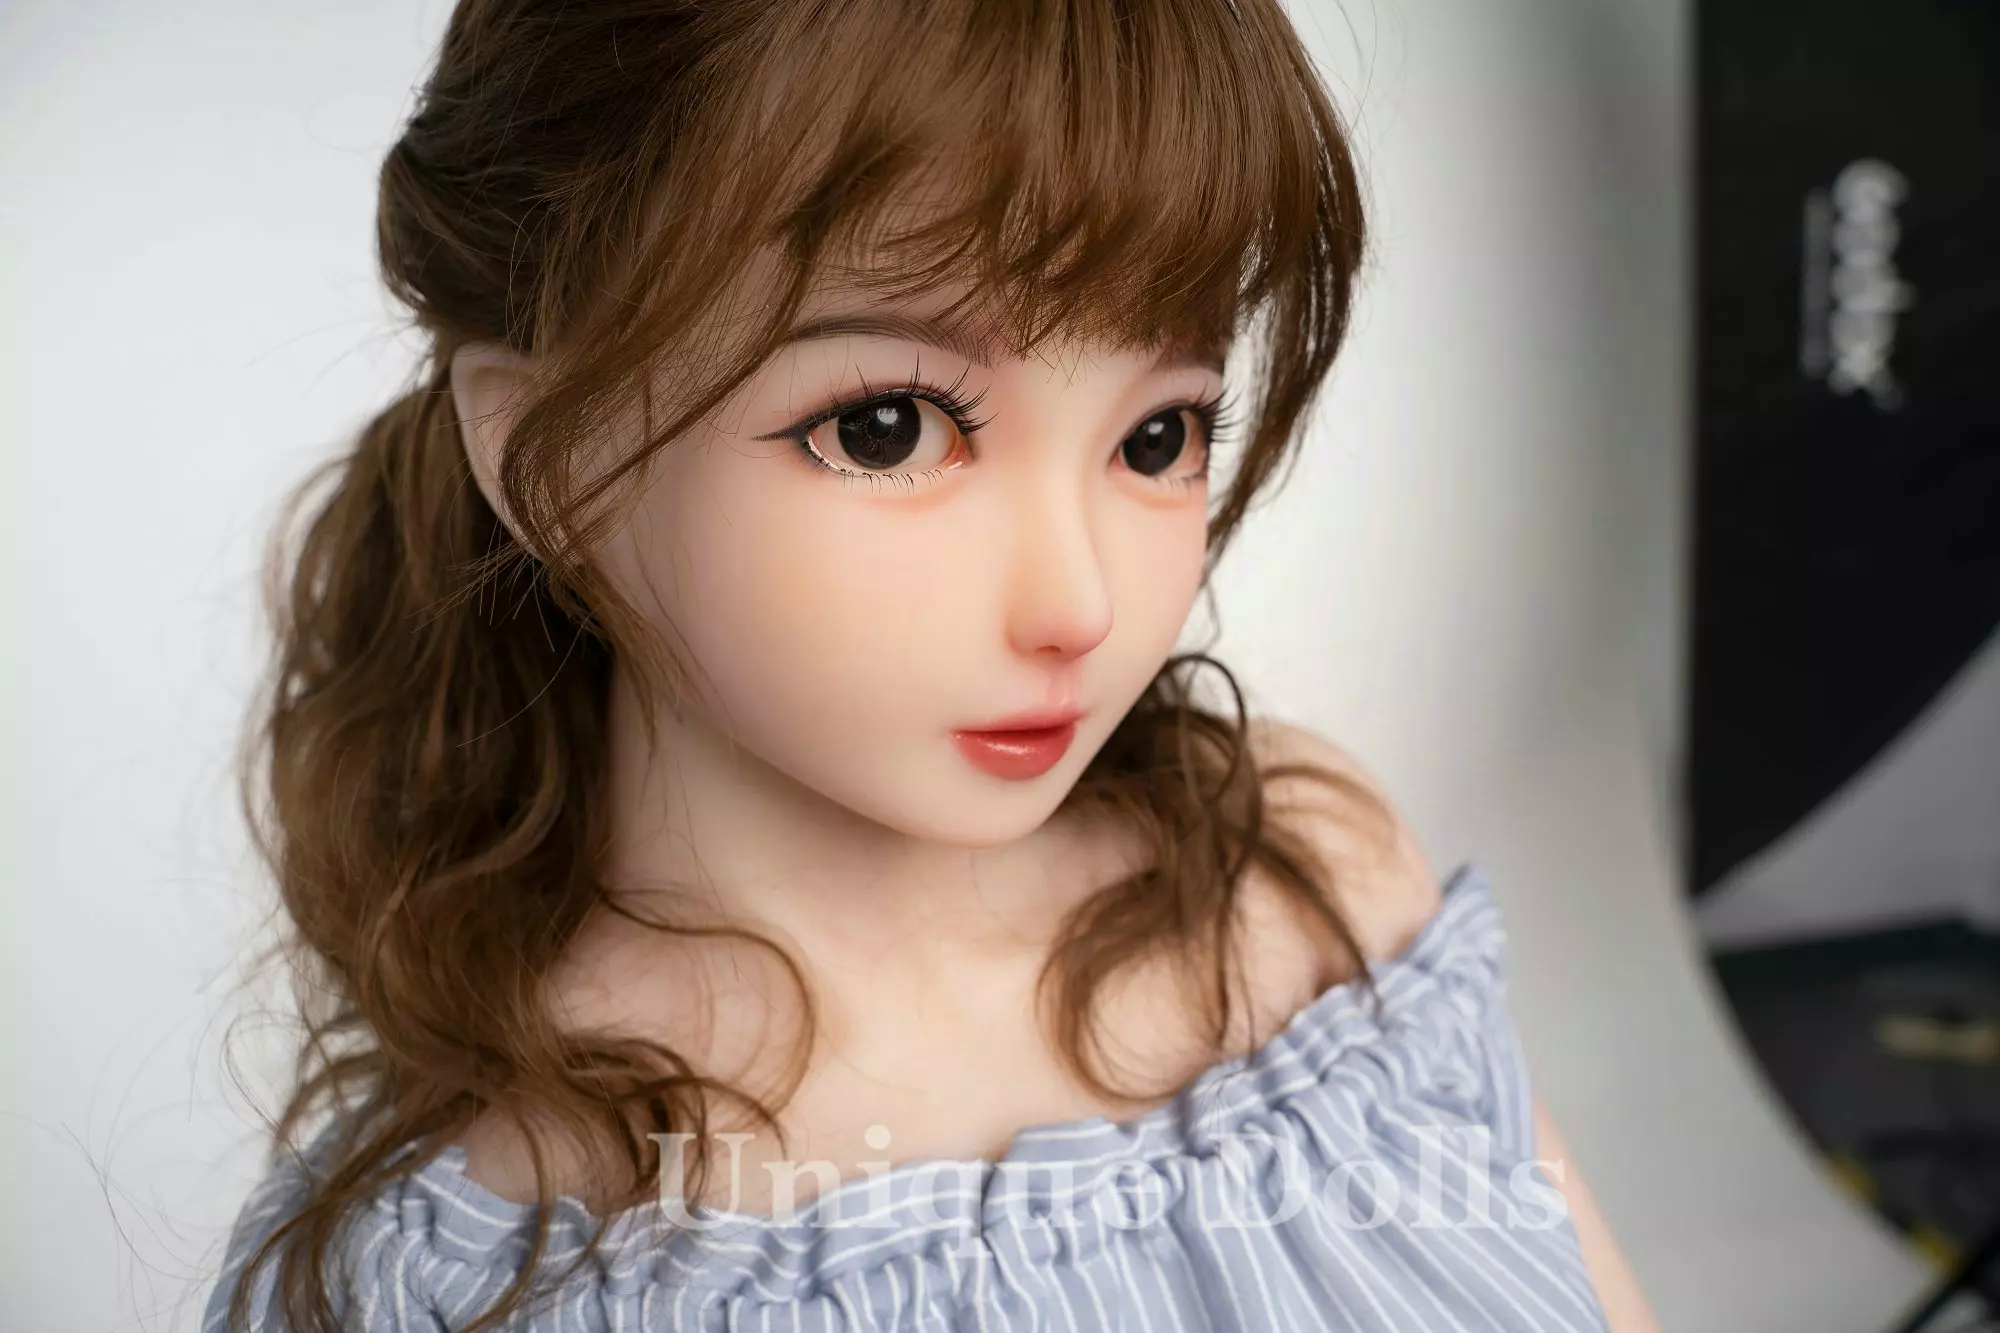 AXB-140cm Judy Cute Sex Doll with A84 Head